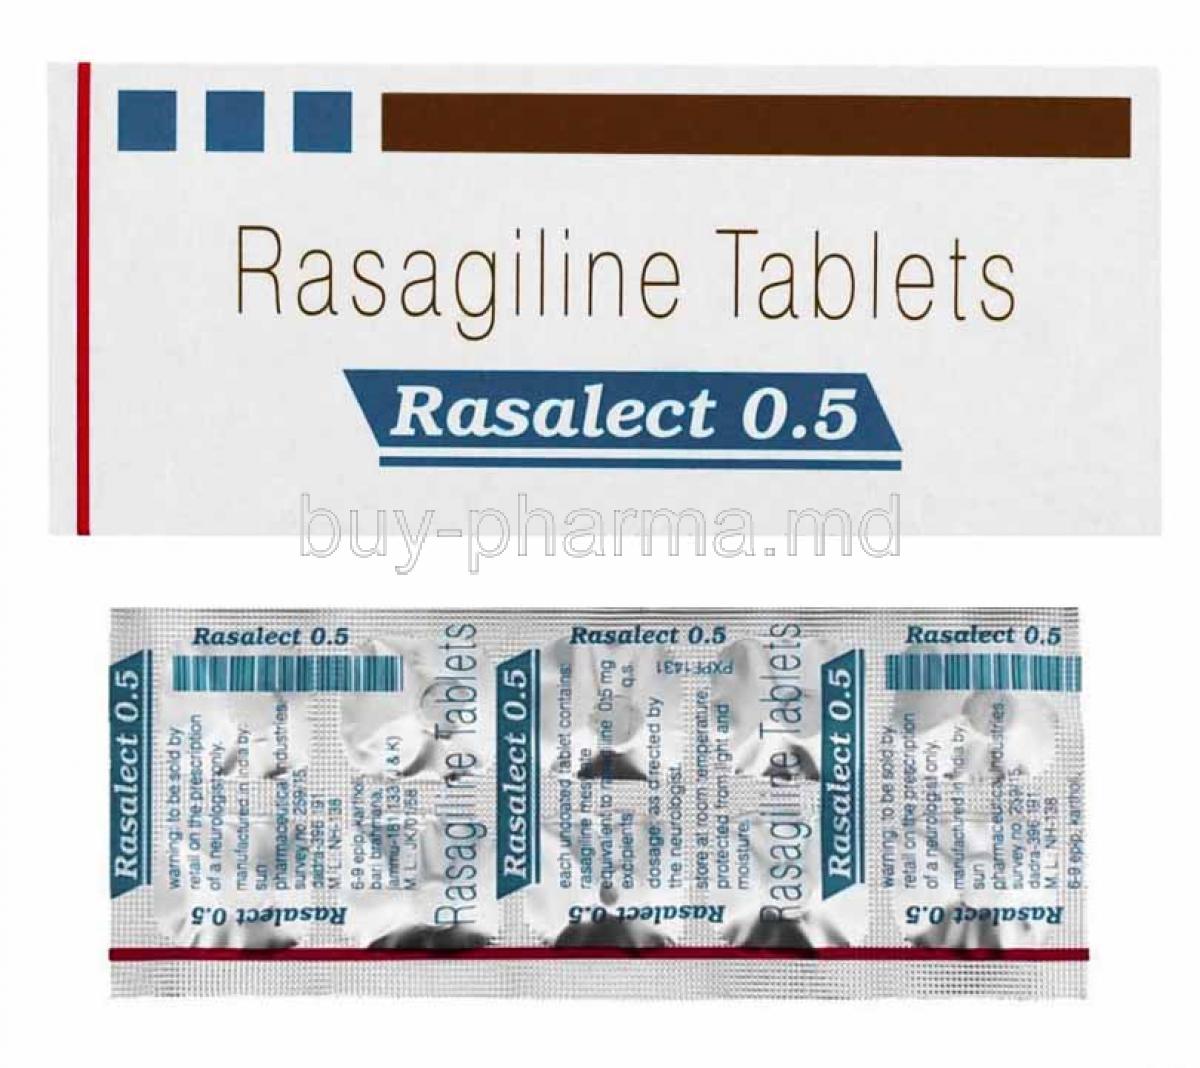 Rasalect, Rasagiline 0.5mg box and tablets